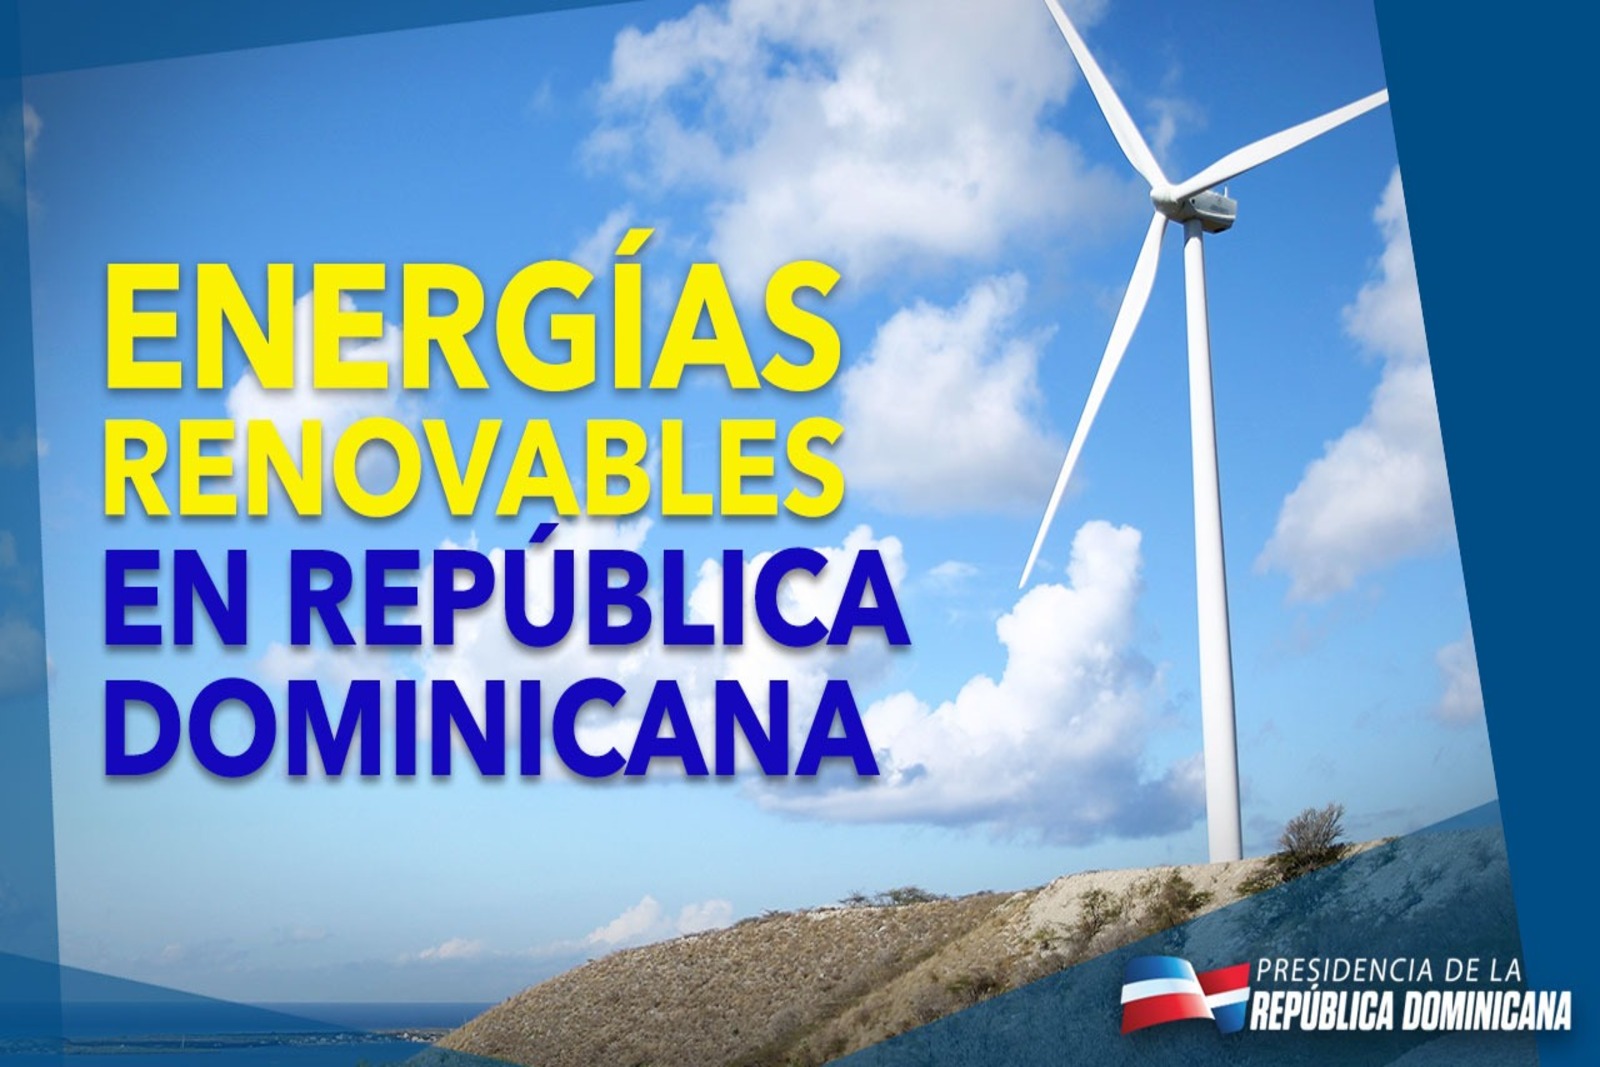 REPÚBLICA DOMINICANA: Desde 2012, la producción en República Dominicana de energía renovable no convencional se ha multiplicado por 18